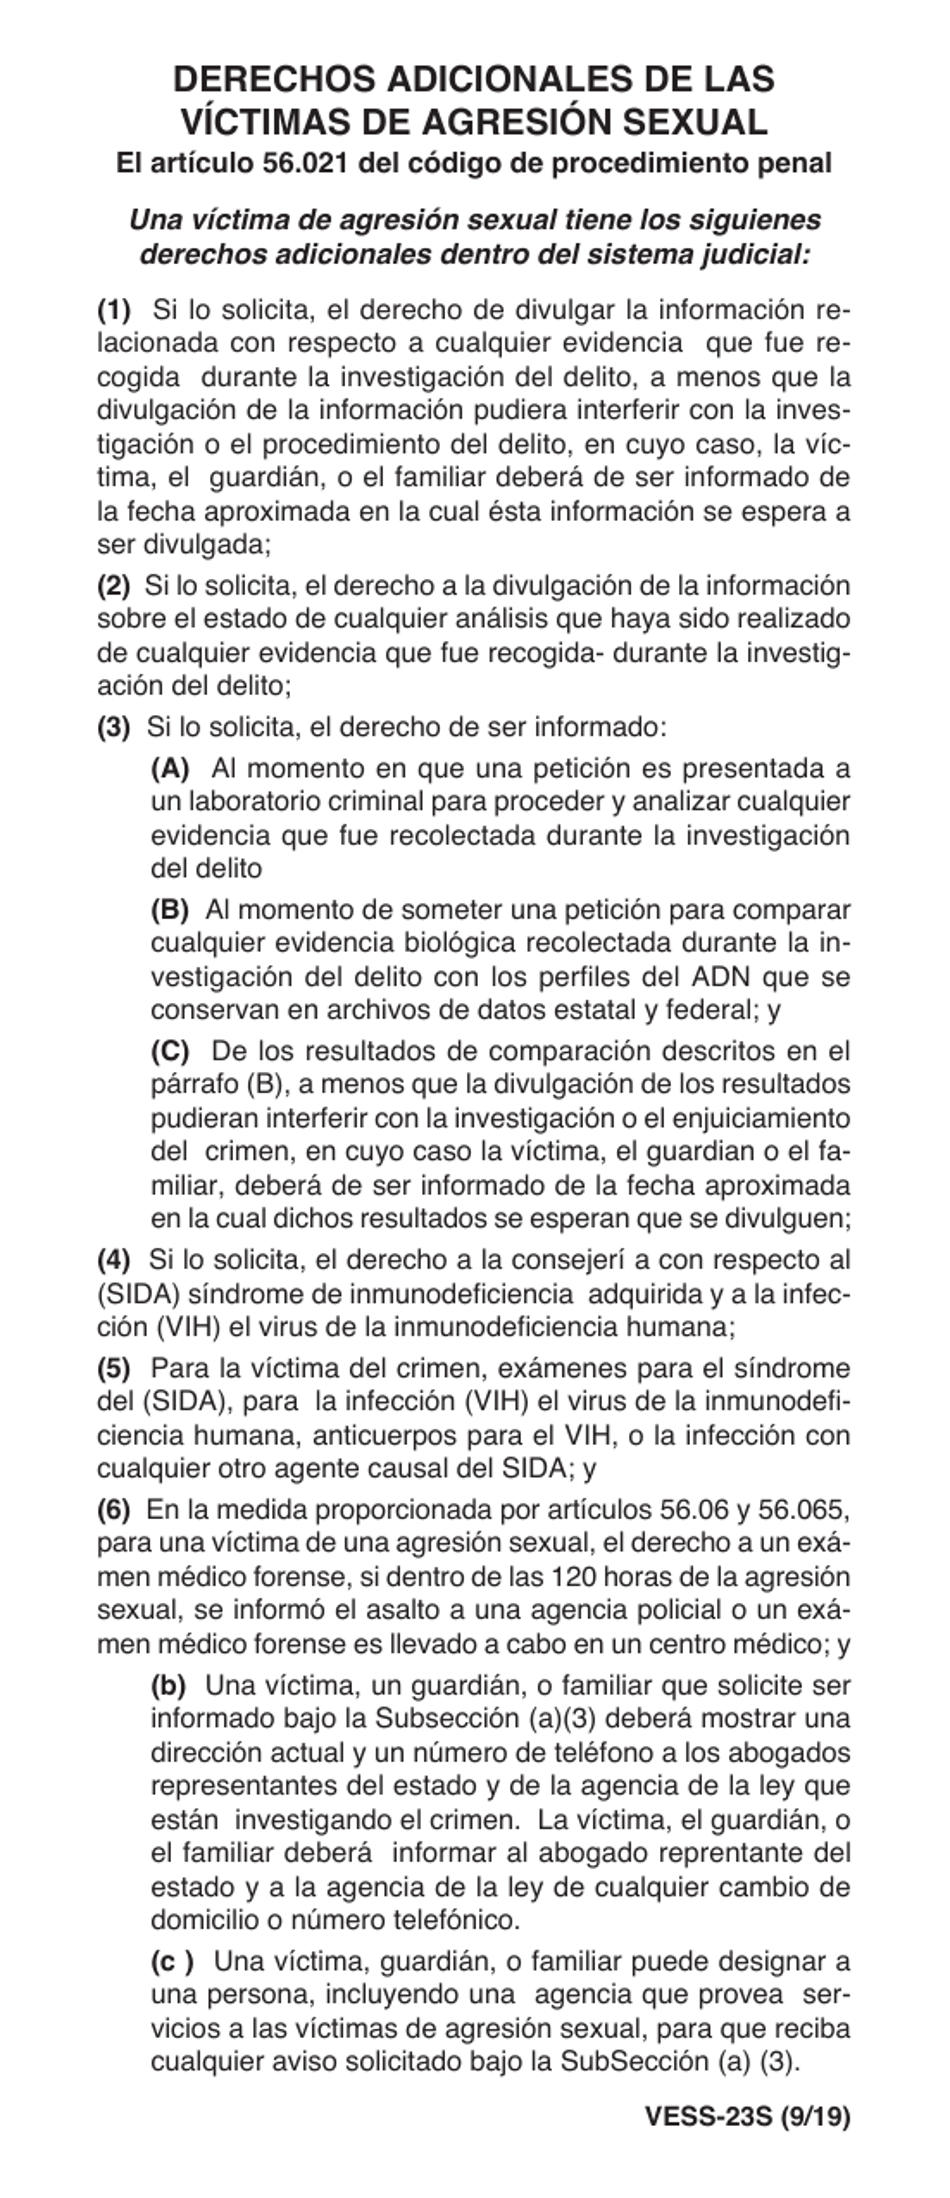 Formulario VESS-23S Derechos Adicionales De Las Victimas De Agresion Sexual - Texas (Spanish), Page 1